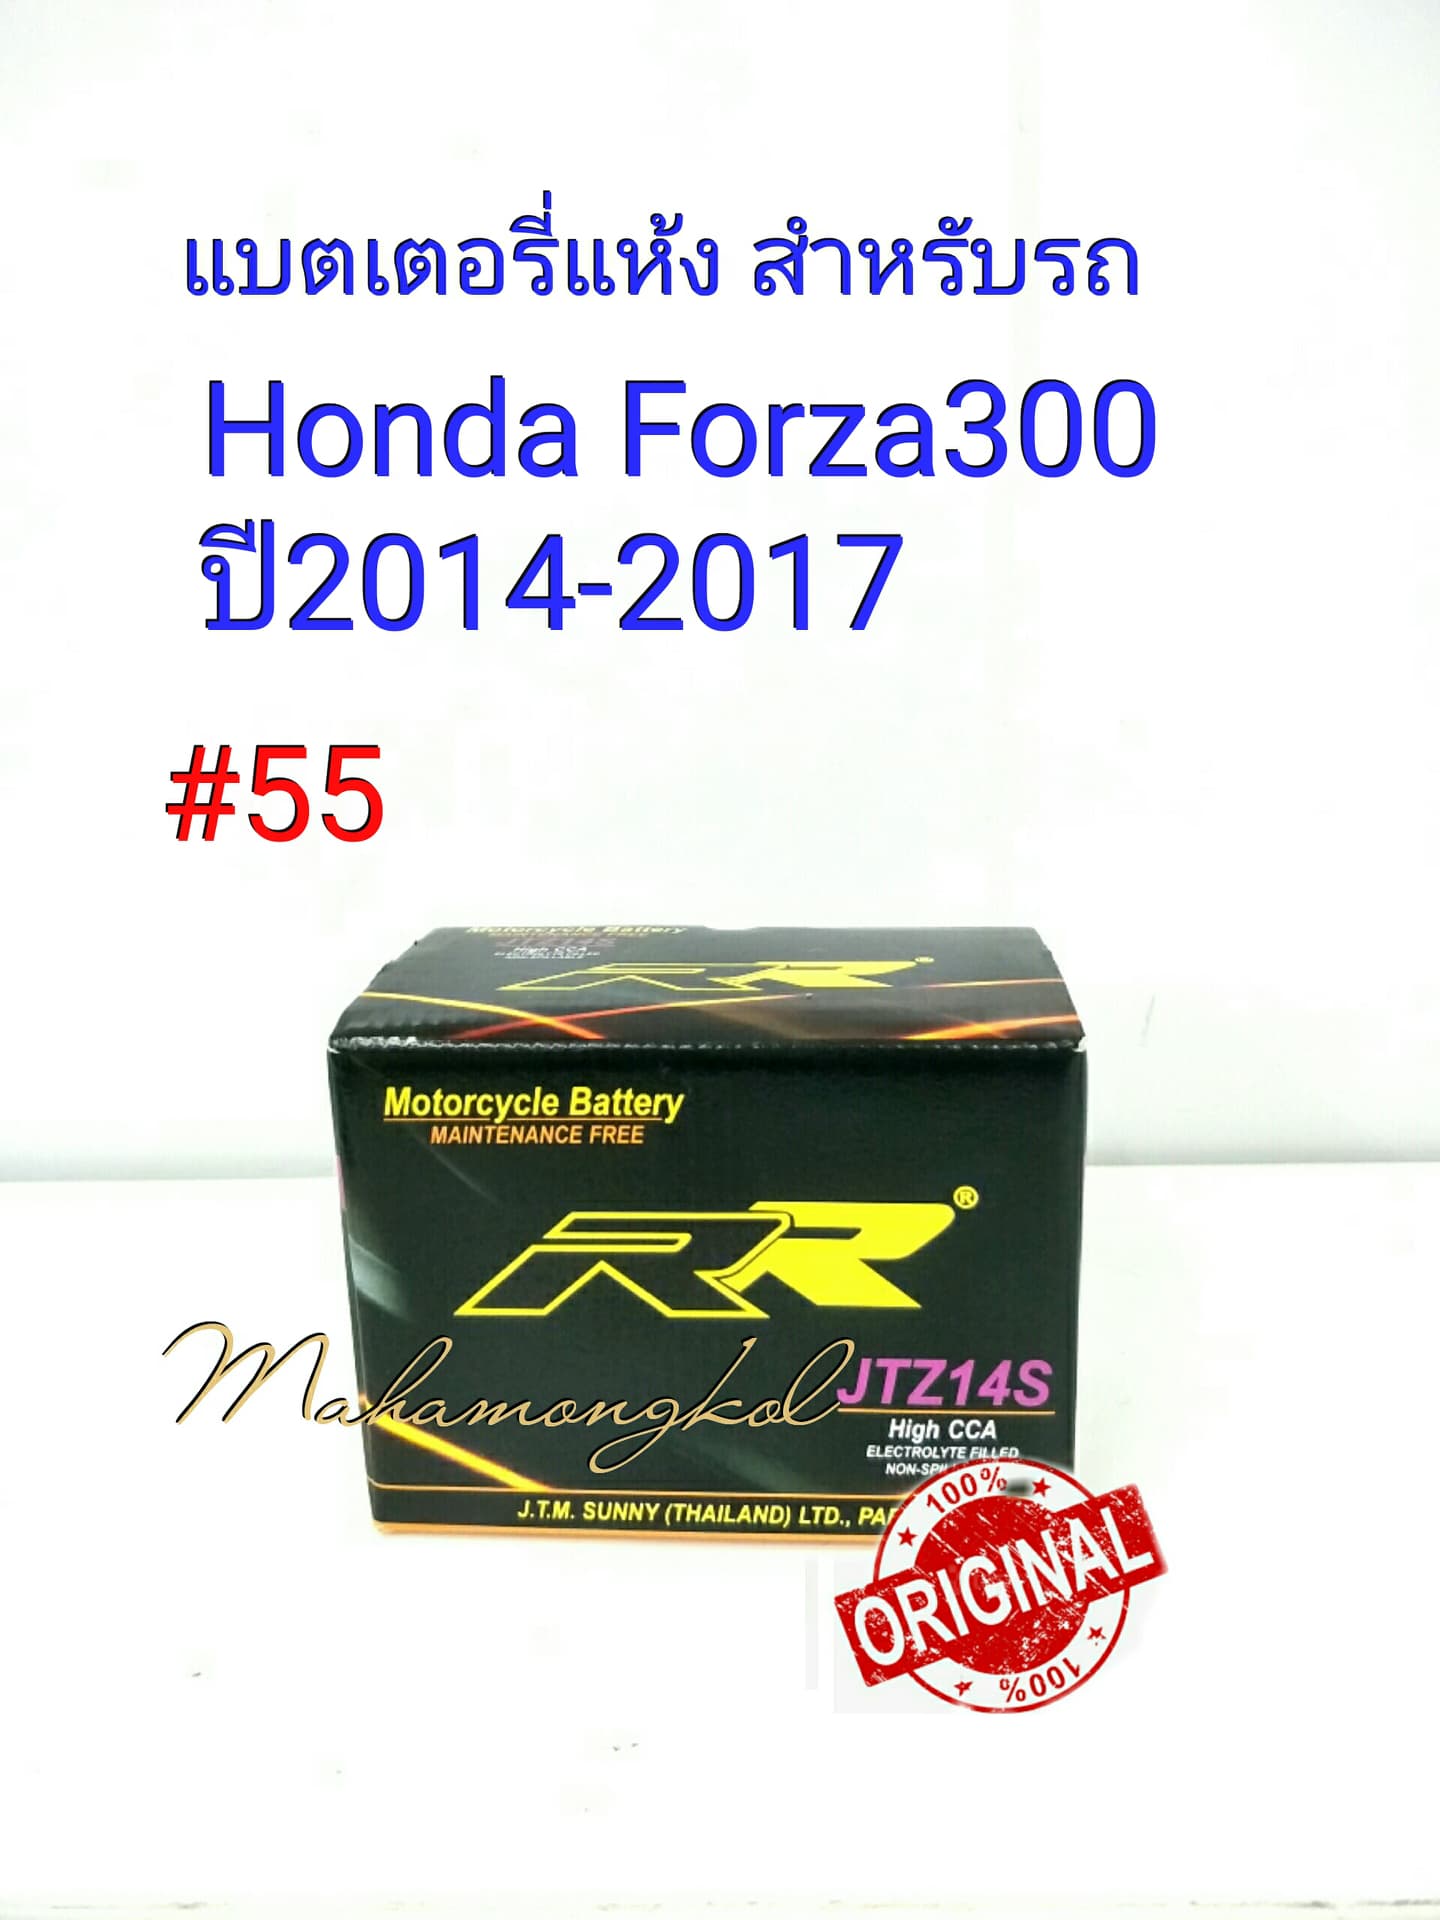 แบตเตอรี่ แห้ง JTZ 14S  12 V 12  Ah ยี่ห้อ RR แท้ 100% สำหรับรถ Honda Forza300 ปี 2014-2017 #55